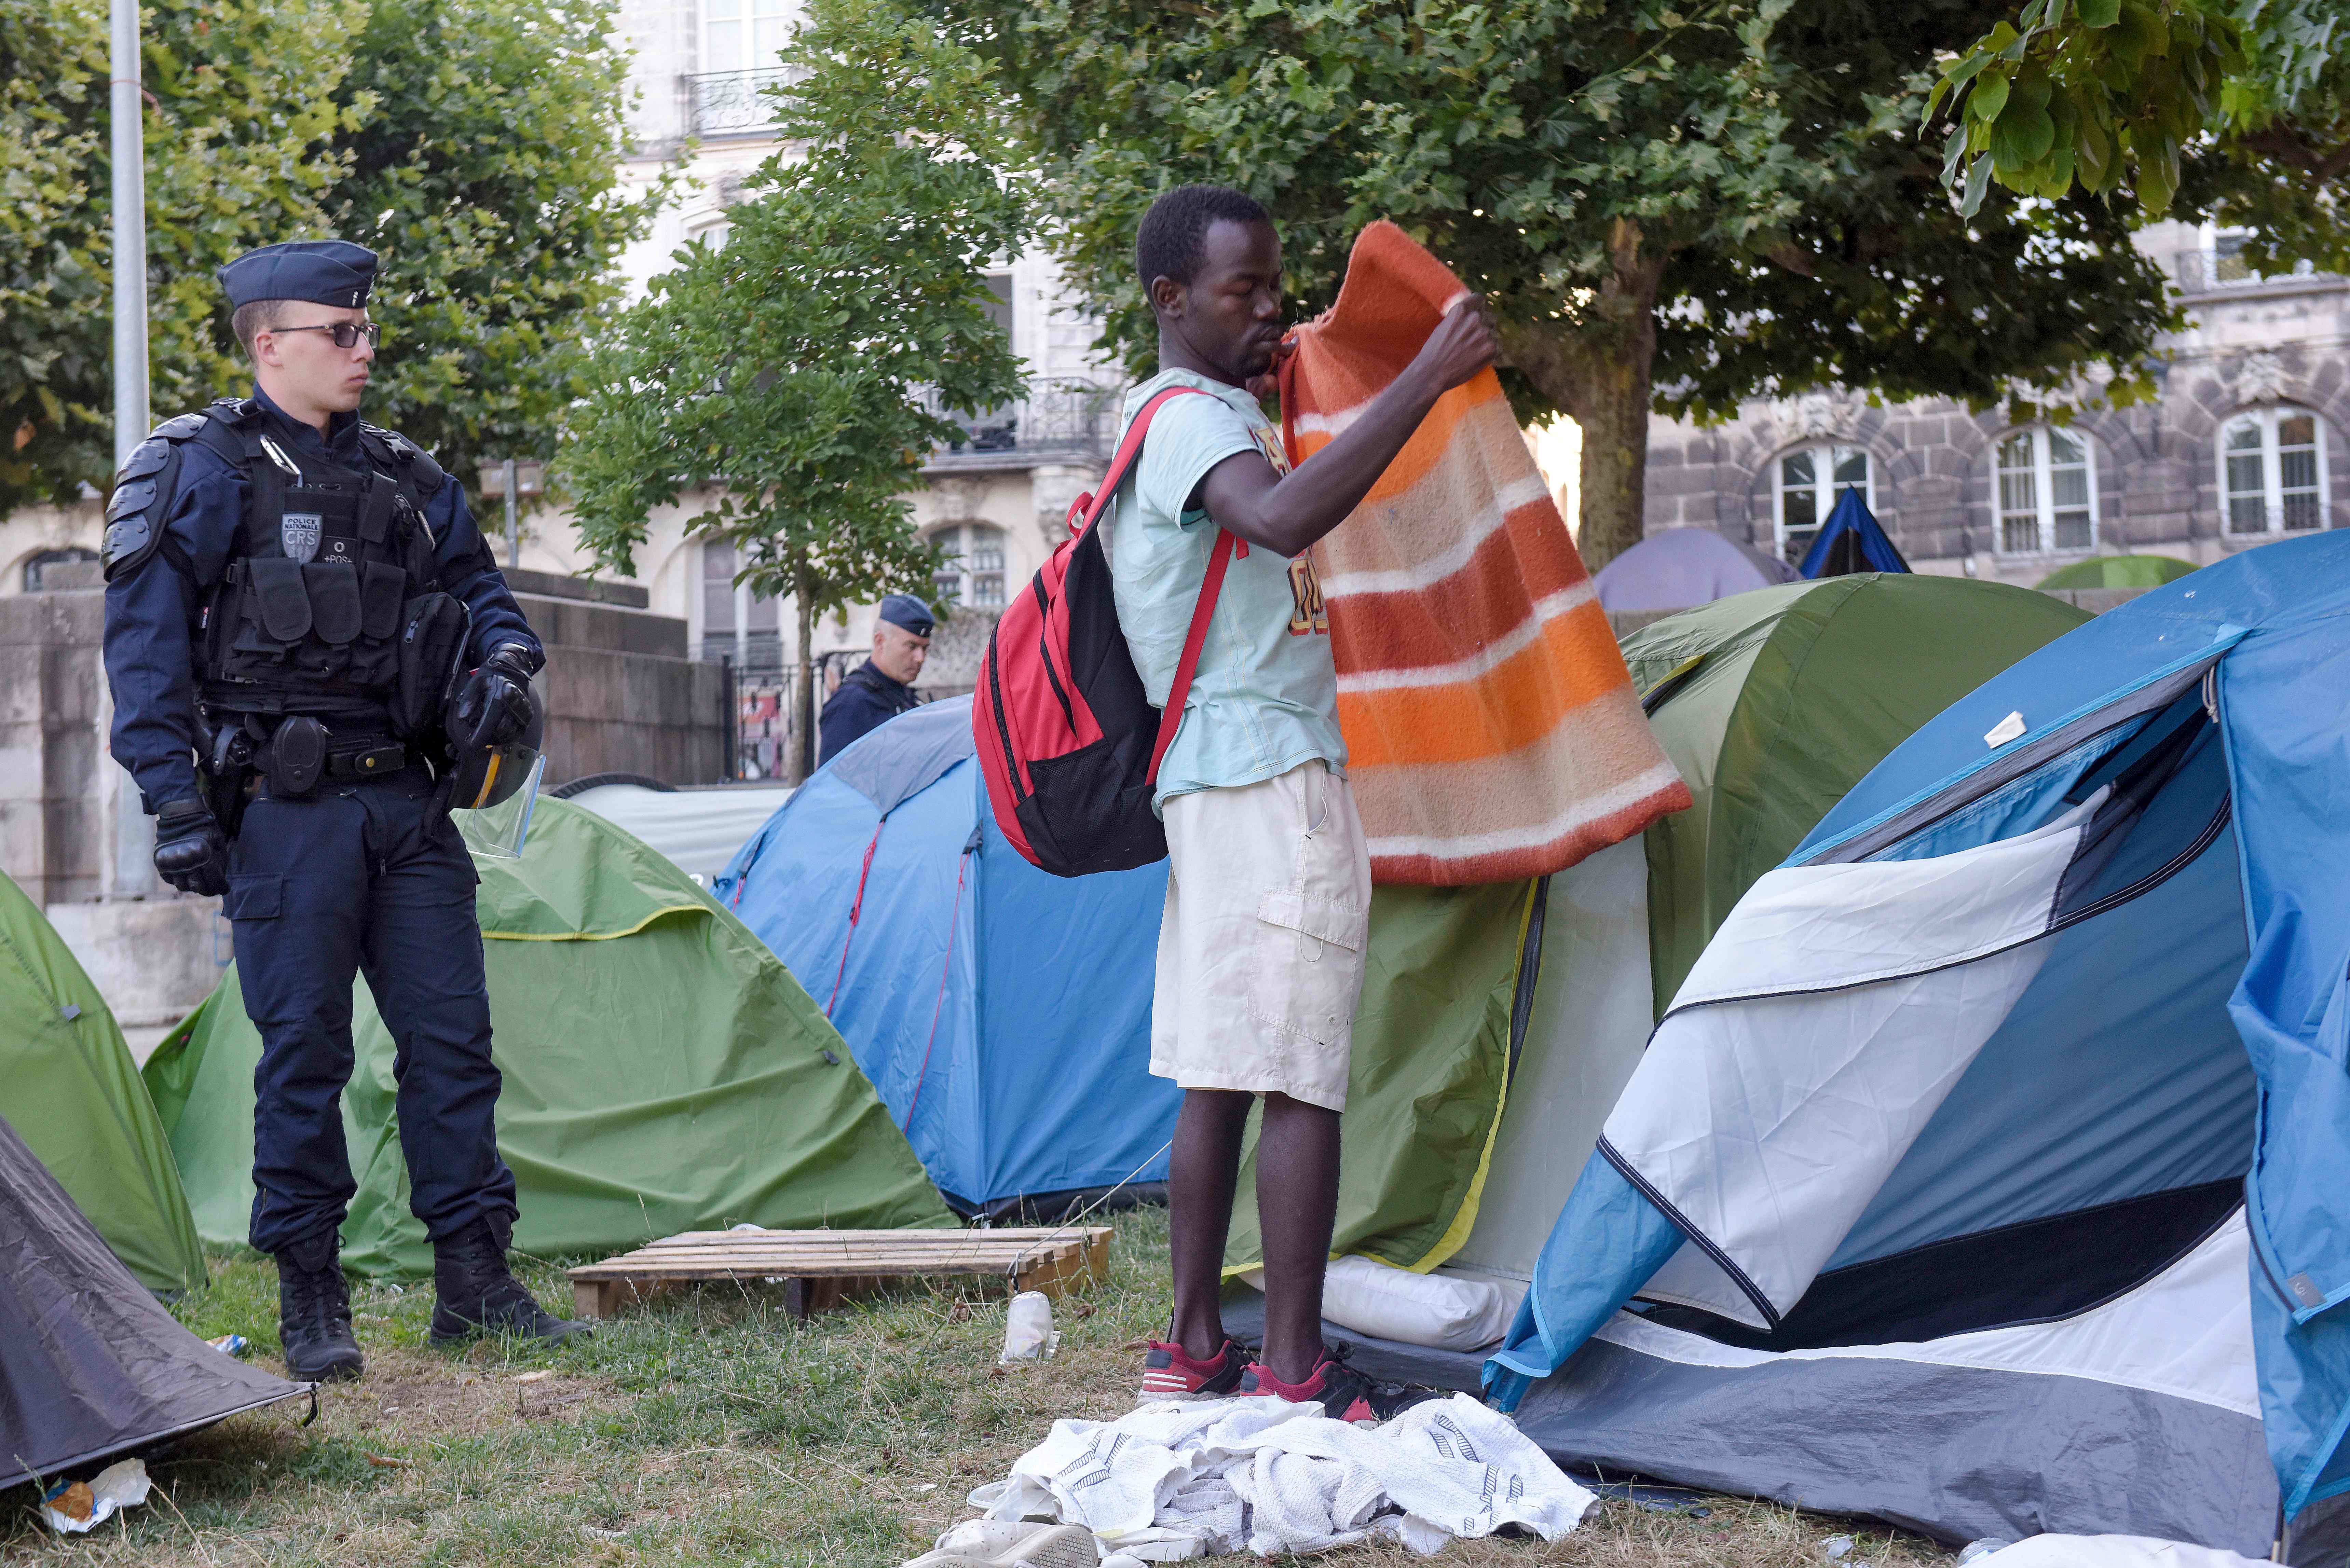 إخلاء مخيم للمهاجرين فى فرنسا يضم أكثر من 450 شخصا